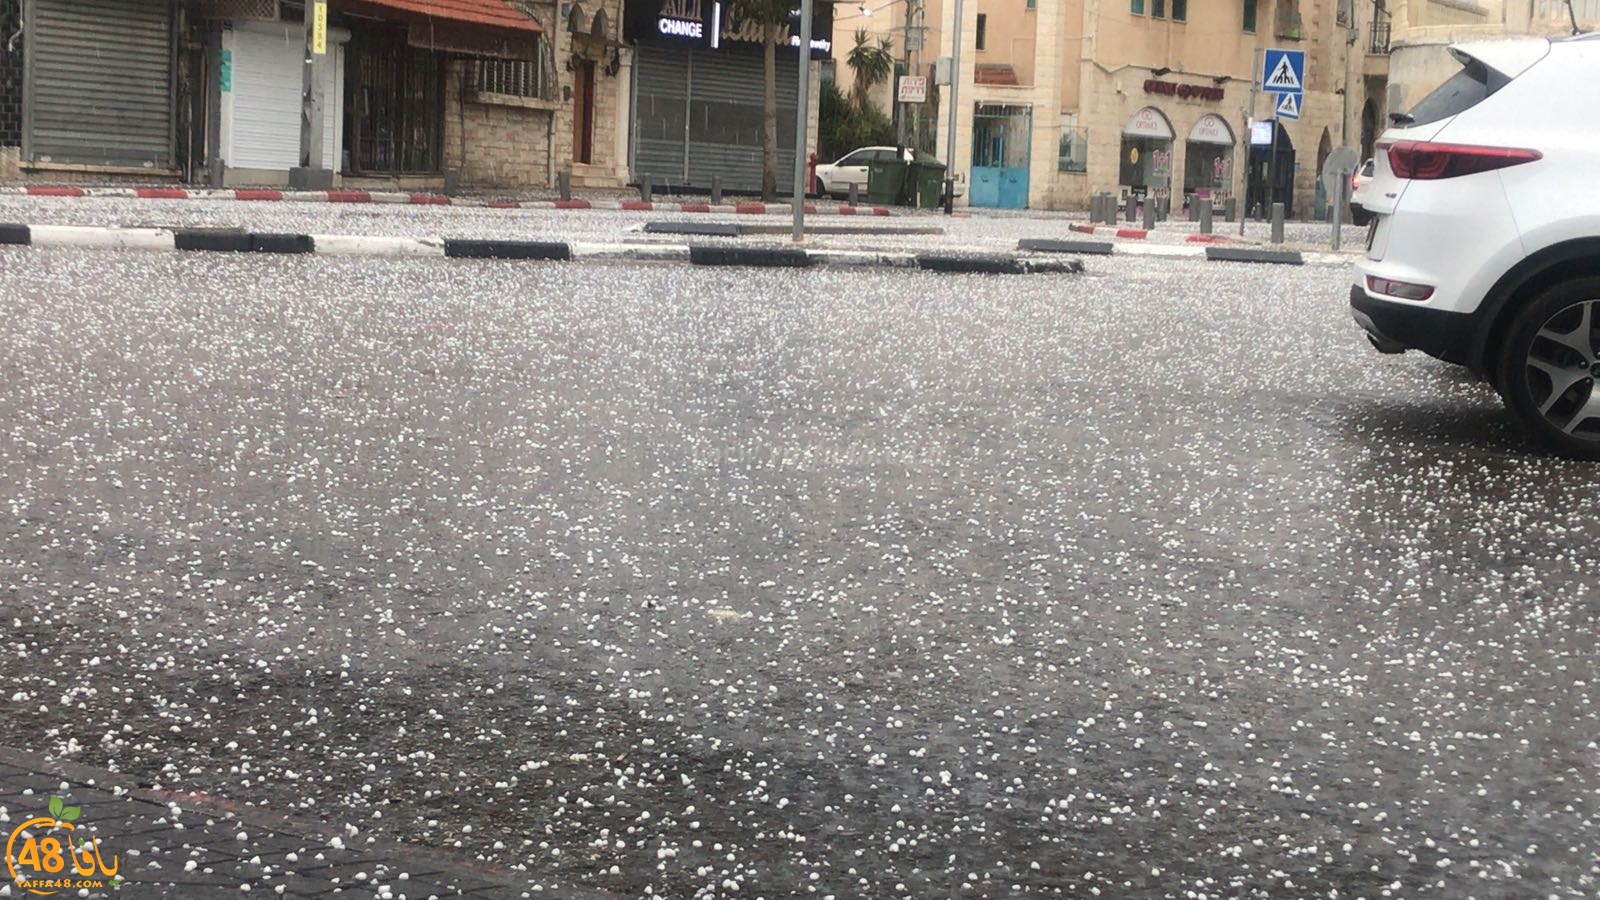  شاهد: يافا هذا الصباح - هطول أمطار وتساقط لحبات البرد في المدينة